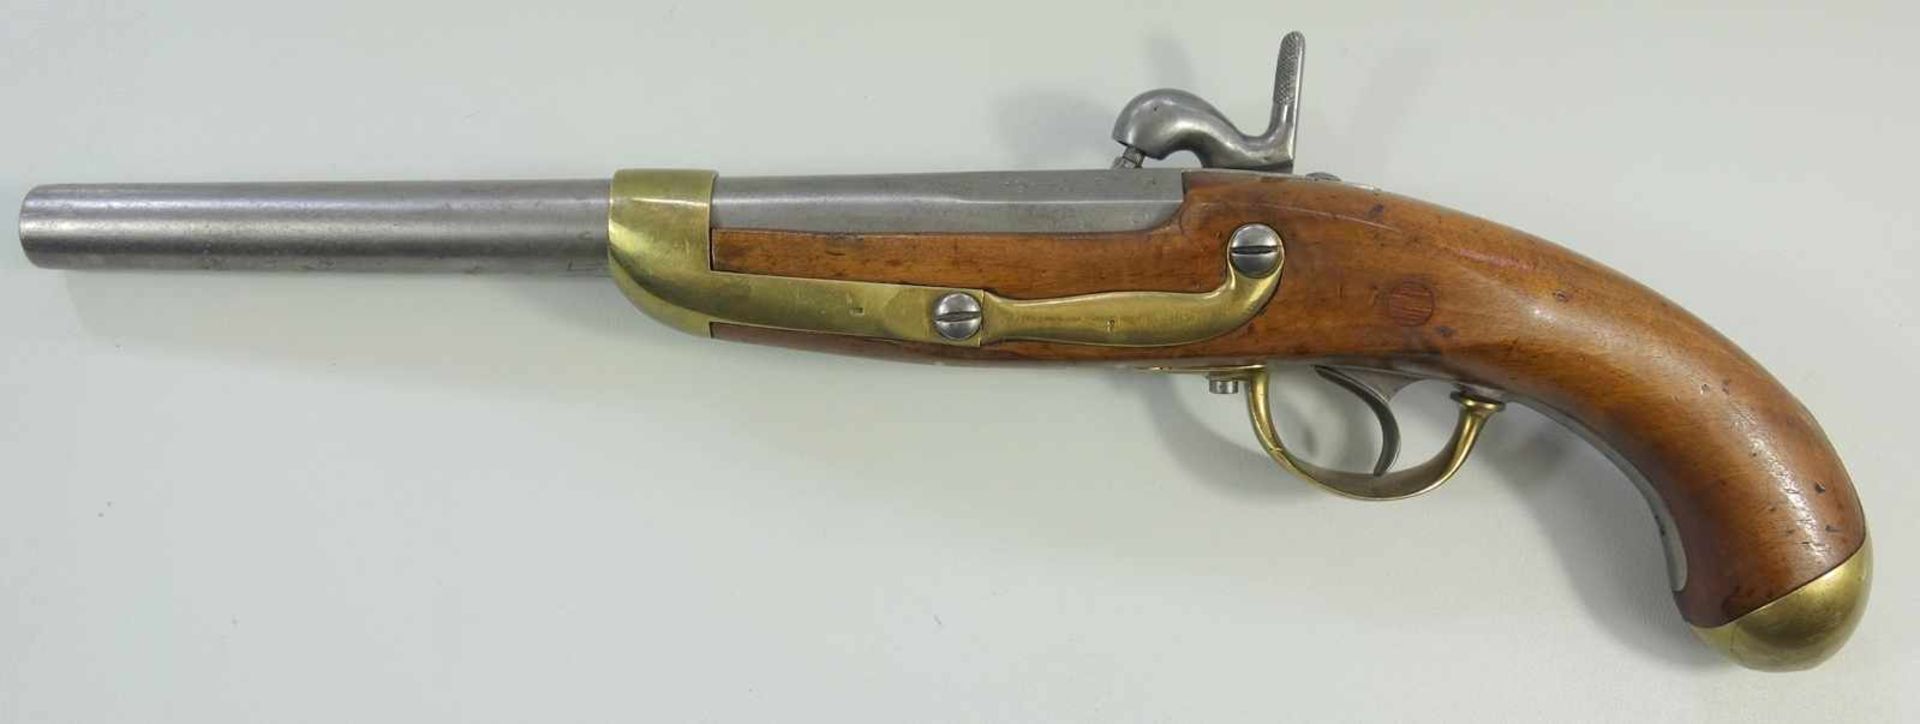 Perkussionspistole, Manufacture Imperiale Liége, Belgien, Kal. 17.6mm, Lauflänge 277mm, gesamt 445m, - Image 3 of 4